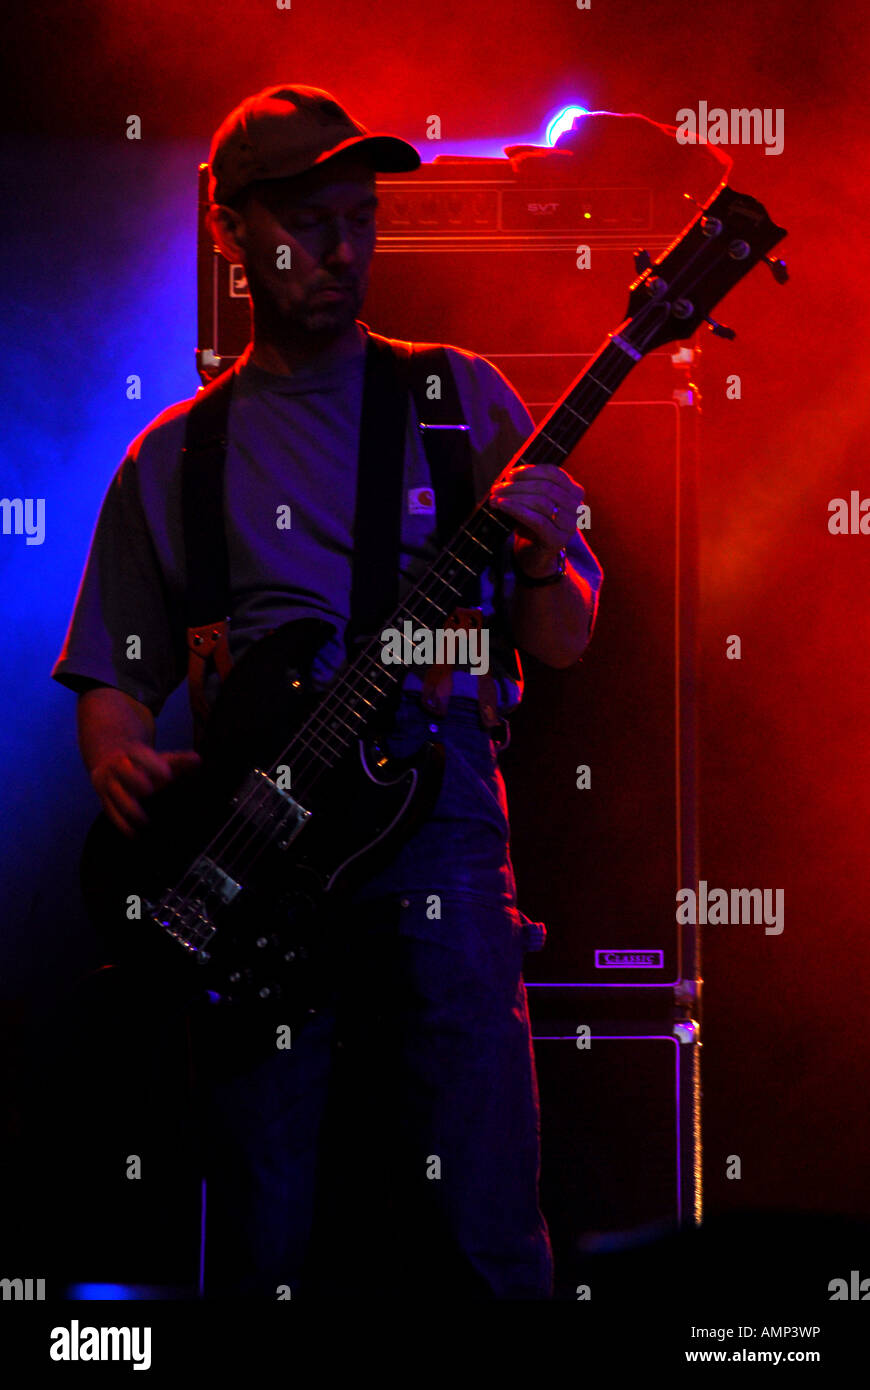 Il bassista dalla sezionatrice medici in berretto da baseball esibirsi sul palco con blu e retroilluminazione rossa Wychwood Festival 2006 Foto Stock